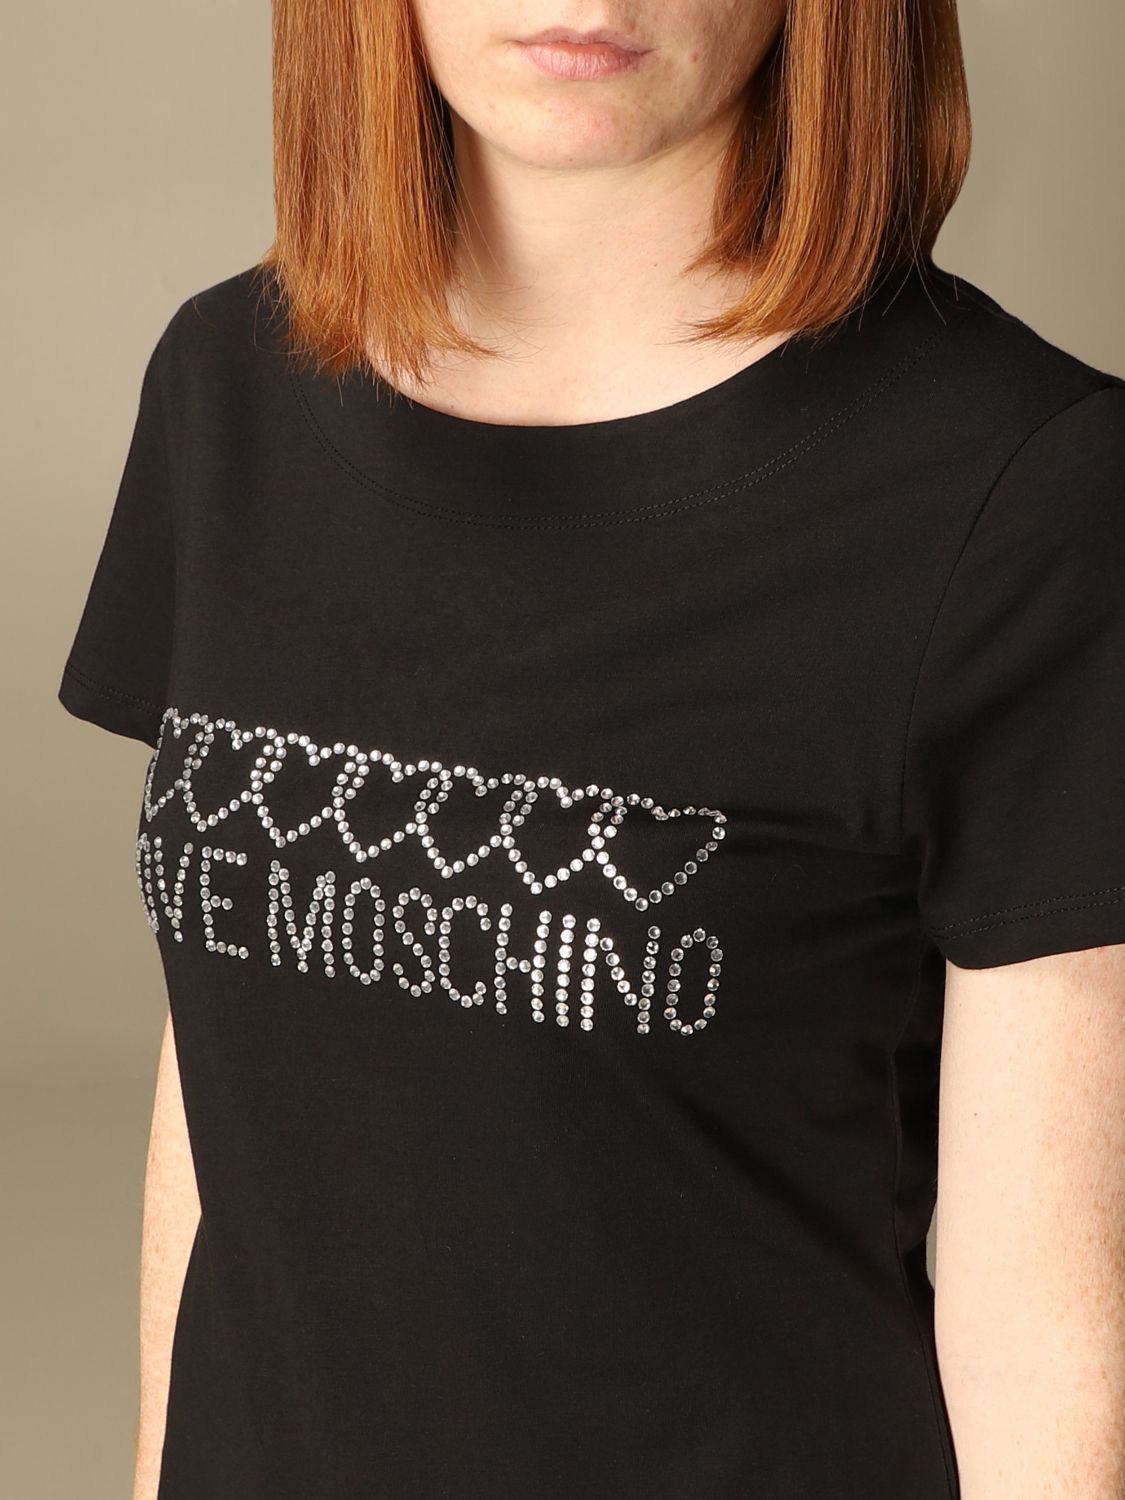 moschino t shirt dress womens